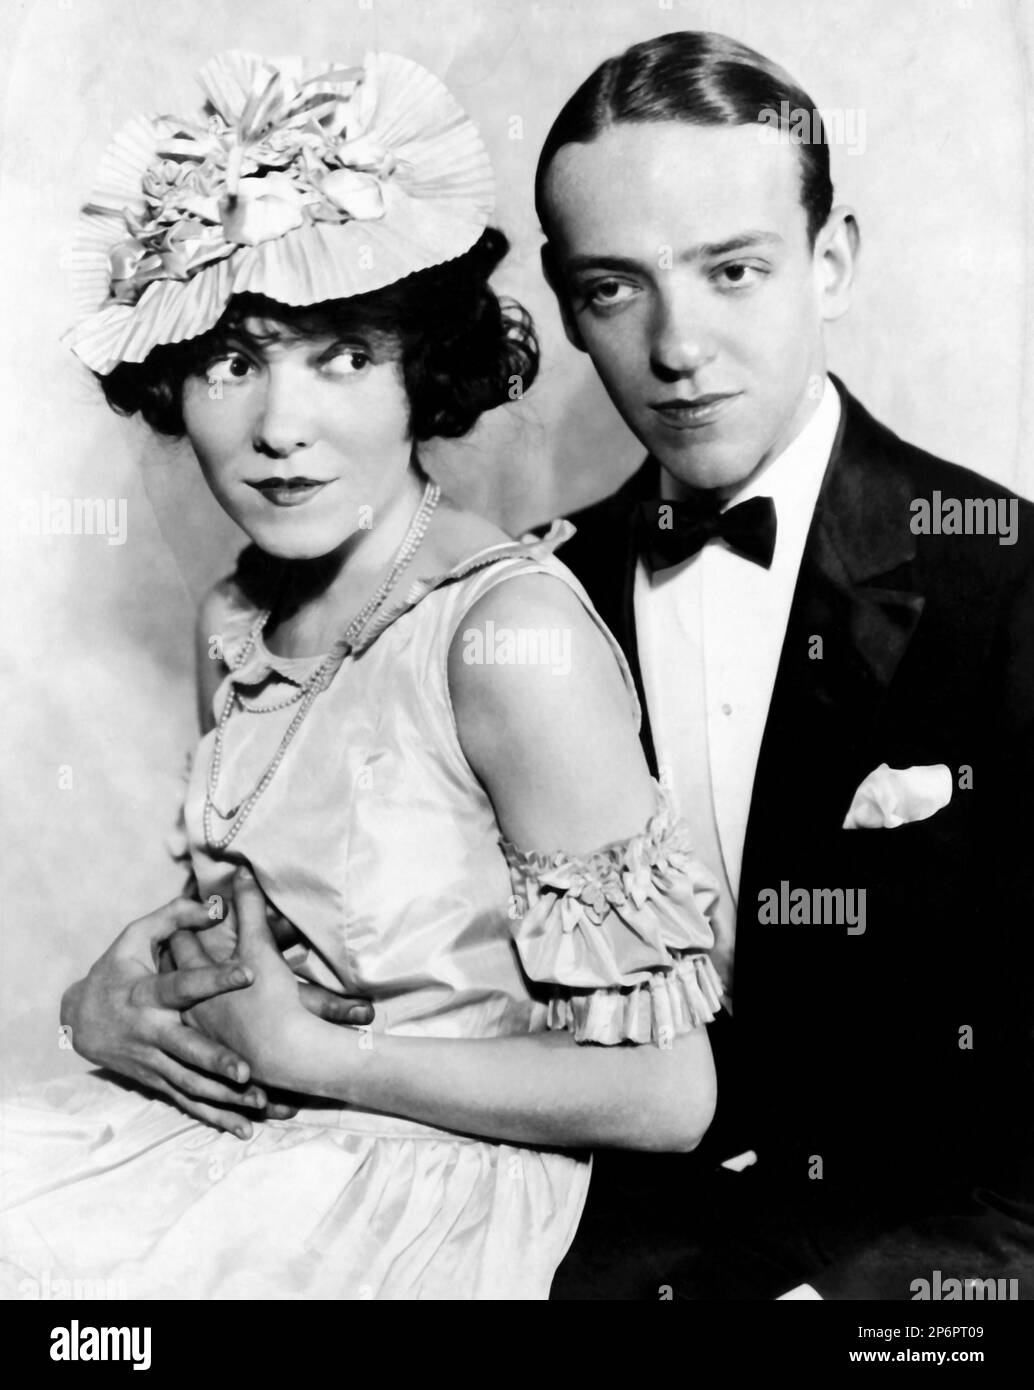 1933 Ca : der Filmschauspieler und Tänzer FRED ASTAIRE ( 1899 - 1987 ) mit seiner Schwester ADELE ASTAIRE ( verheiratet 1932 mit Lord Charles Cavendish ) In einem pubblicitären Bild - KINO - ATTORE CINEMATOGRAFICO - Krawatte - Cravatta - papillon - Fliege - Fett - Brillantina - fazzoletto nel Taschino - Pochette - DANZA - TANZ - Ballerino - TIPP TAP - fratello e sorella - Bruder - Hut - cappello - Neclace - collana - Bijoux - abbraccio - umarmen --- Archivio GBB Stockfoto